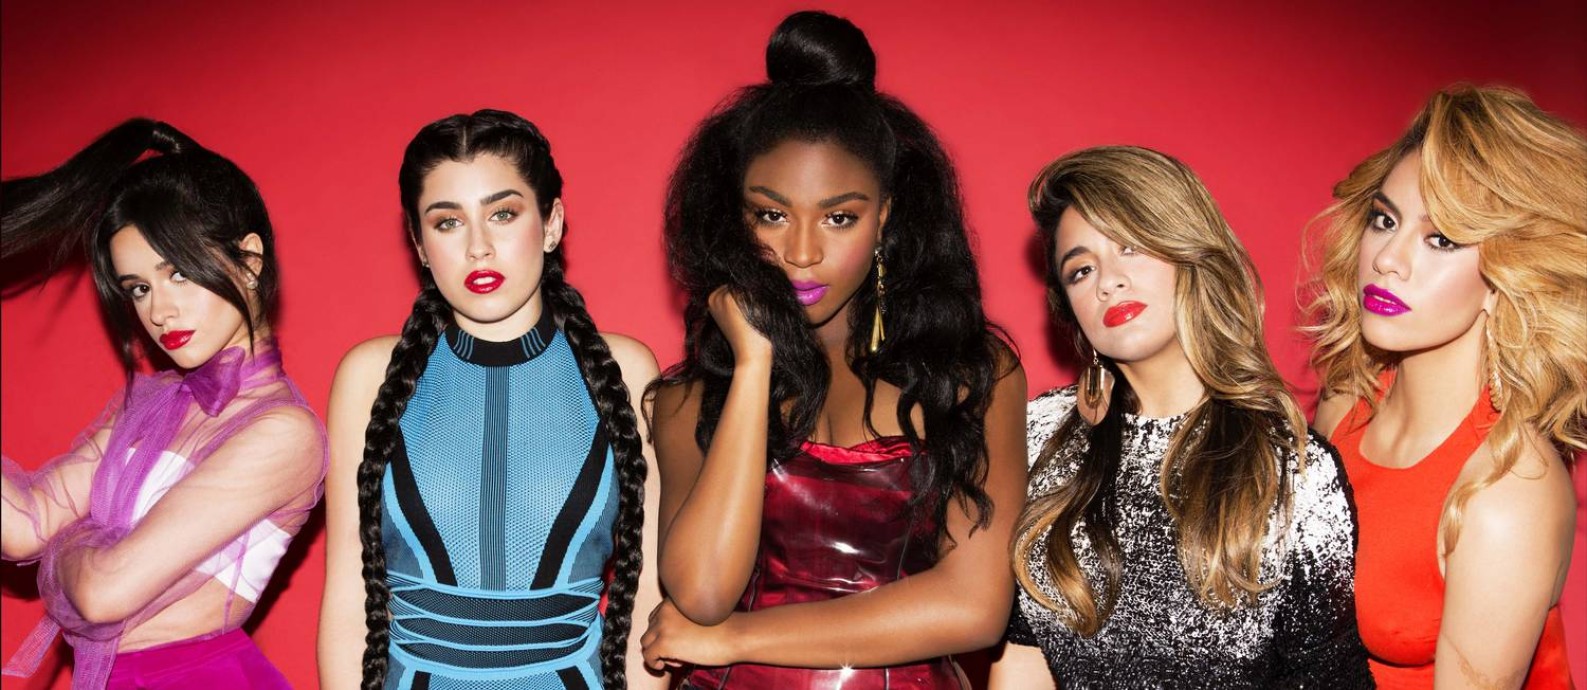 Conjunto Fifth Harmony se apresenta em dezembro no Brasil Foto: Divulgação